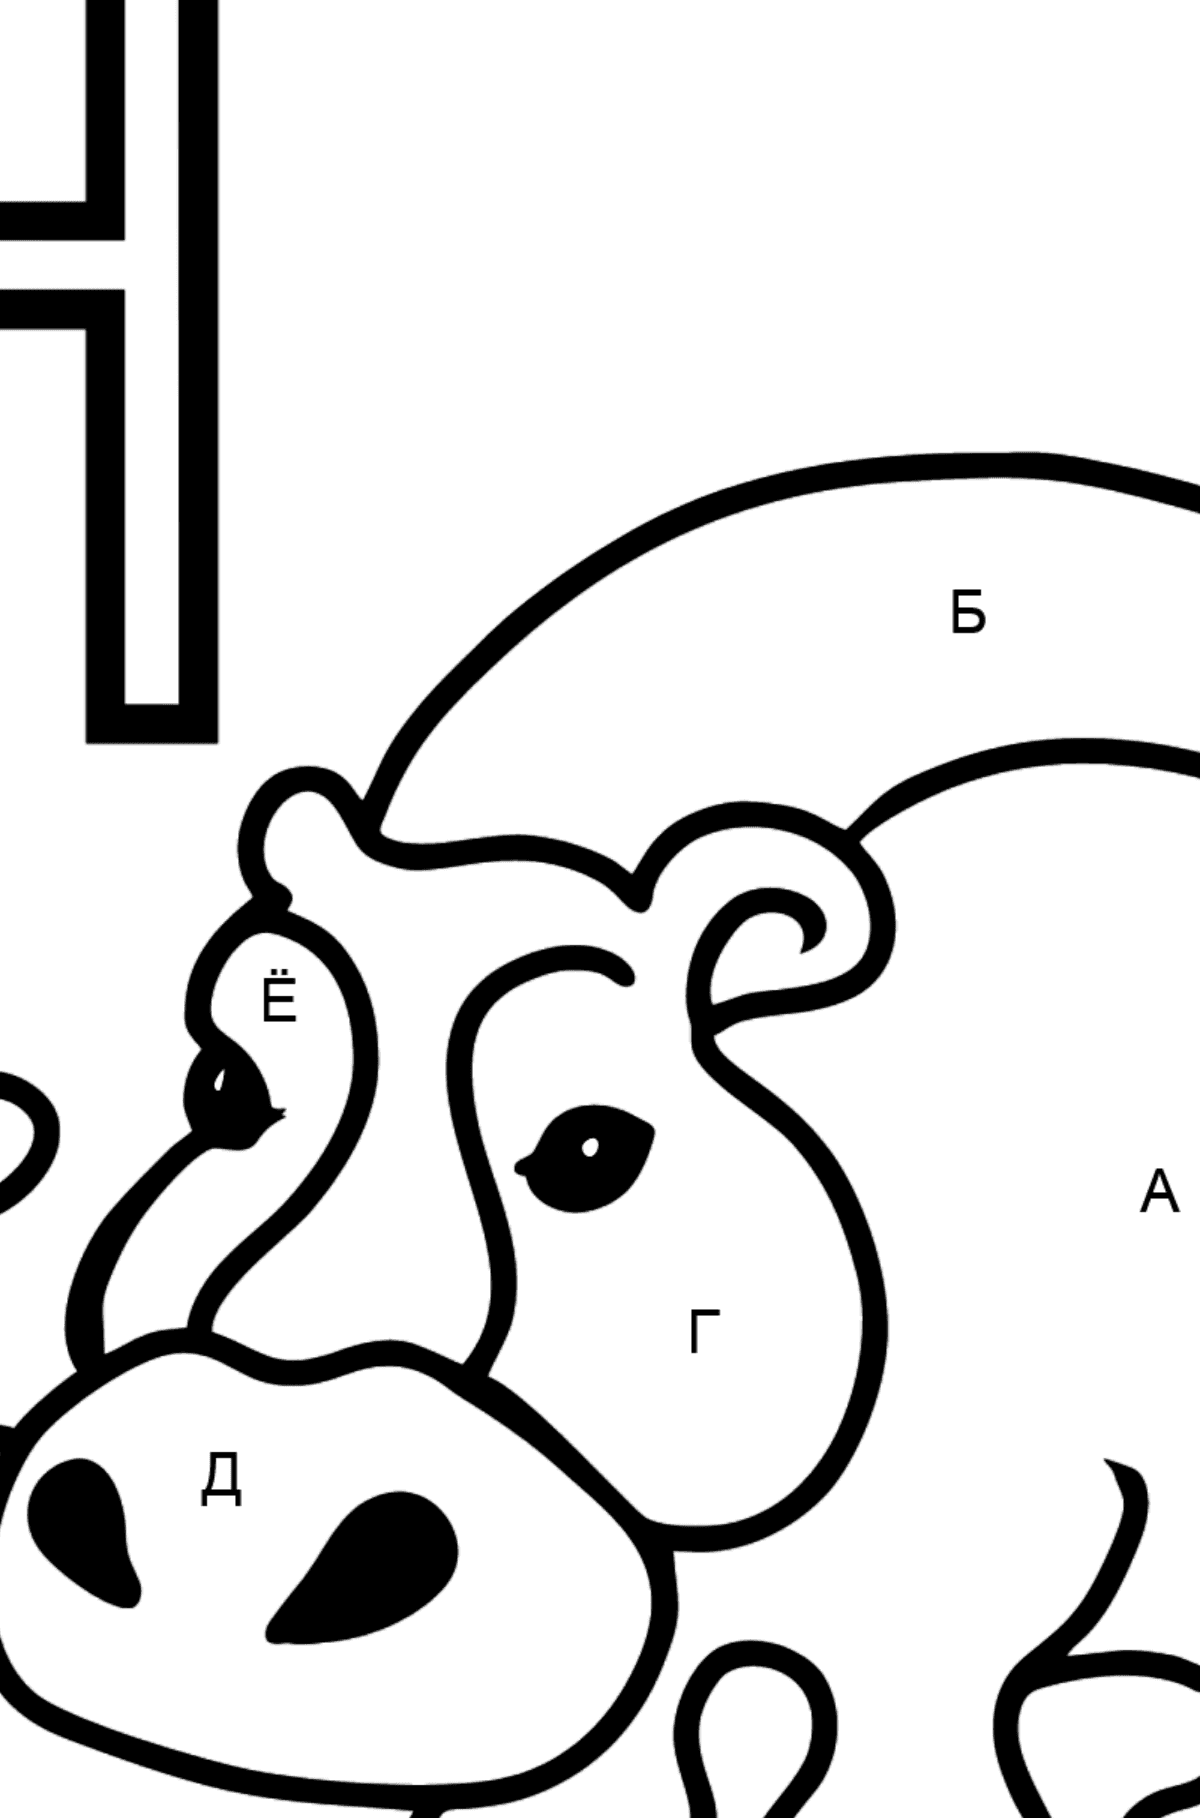 Раскраска Буква H - португальский алфавит - HIPOPÓTAMO - По Буквам для Детей